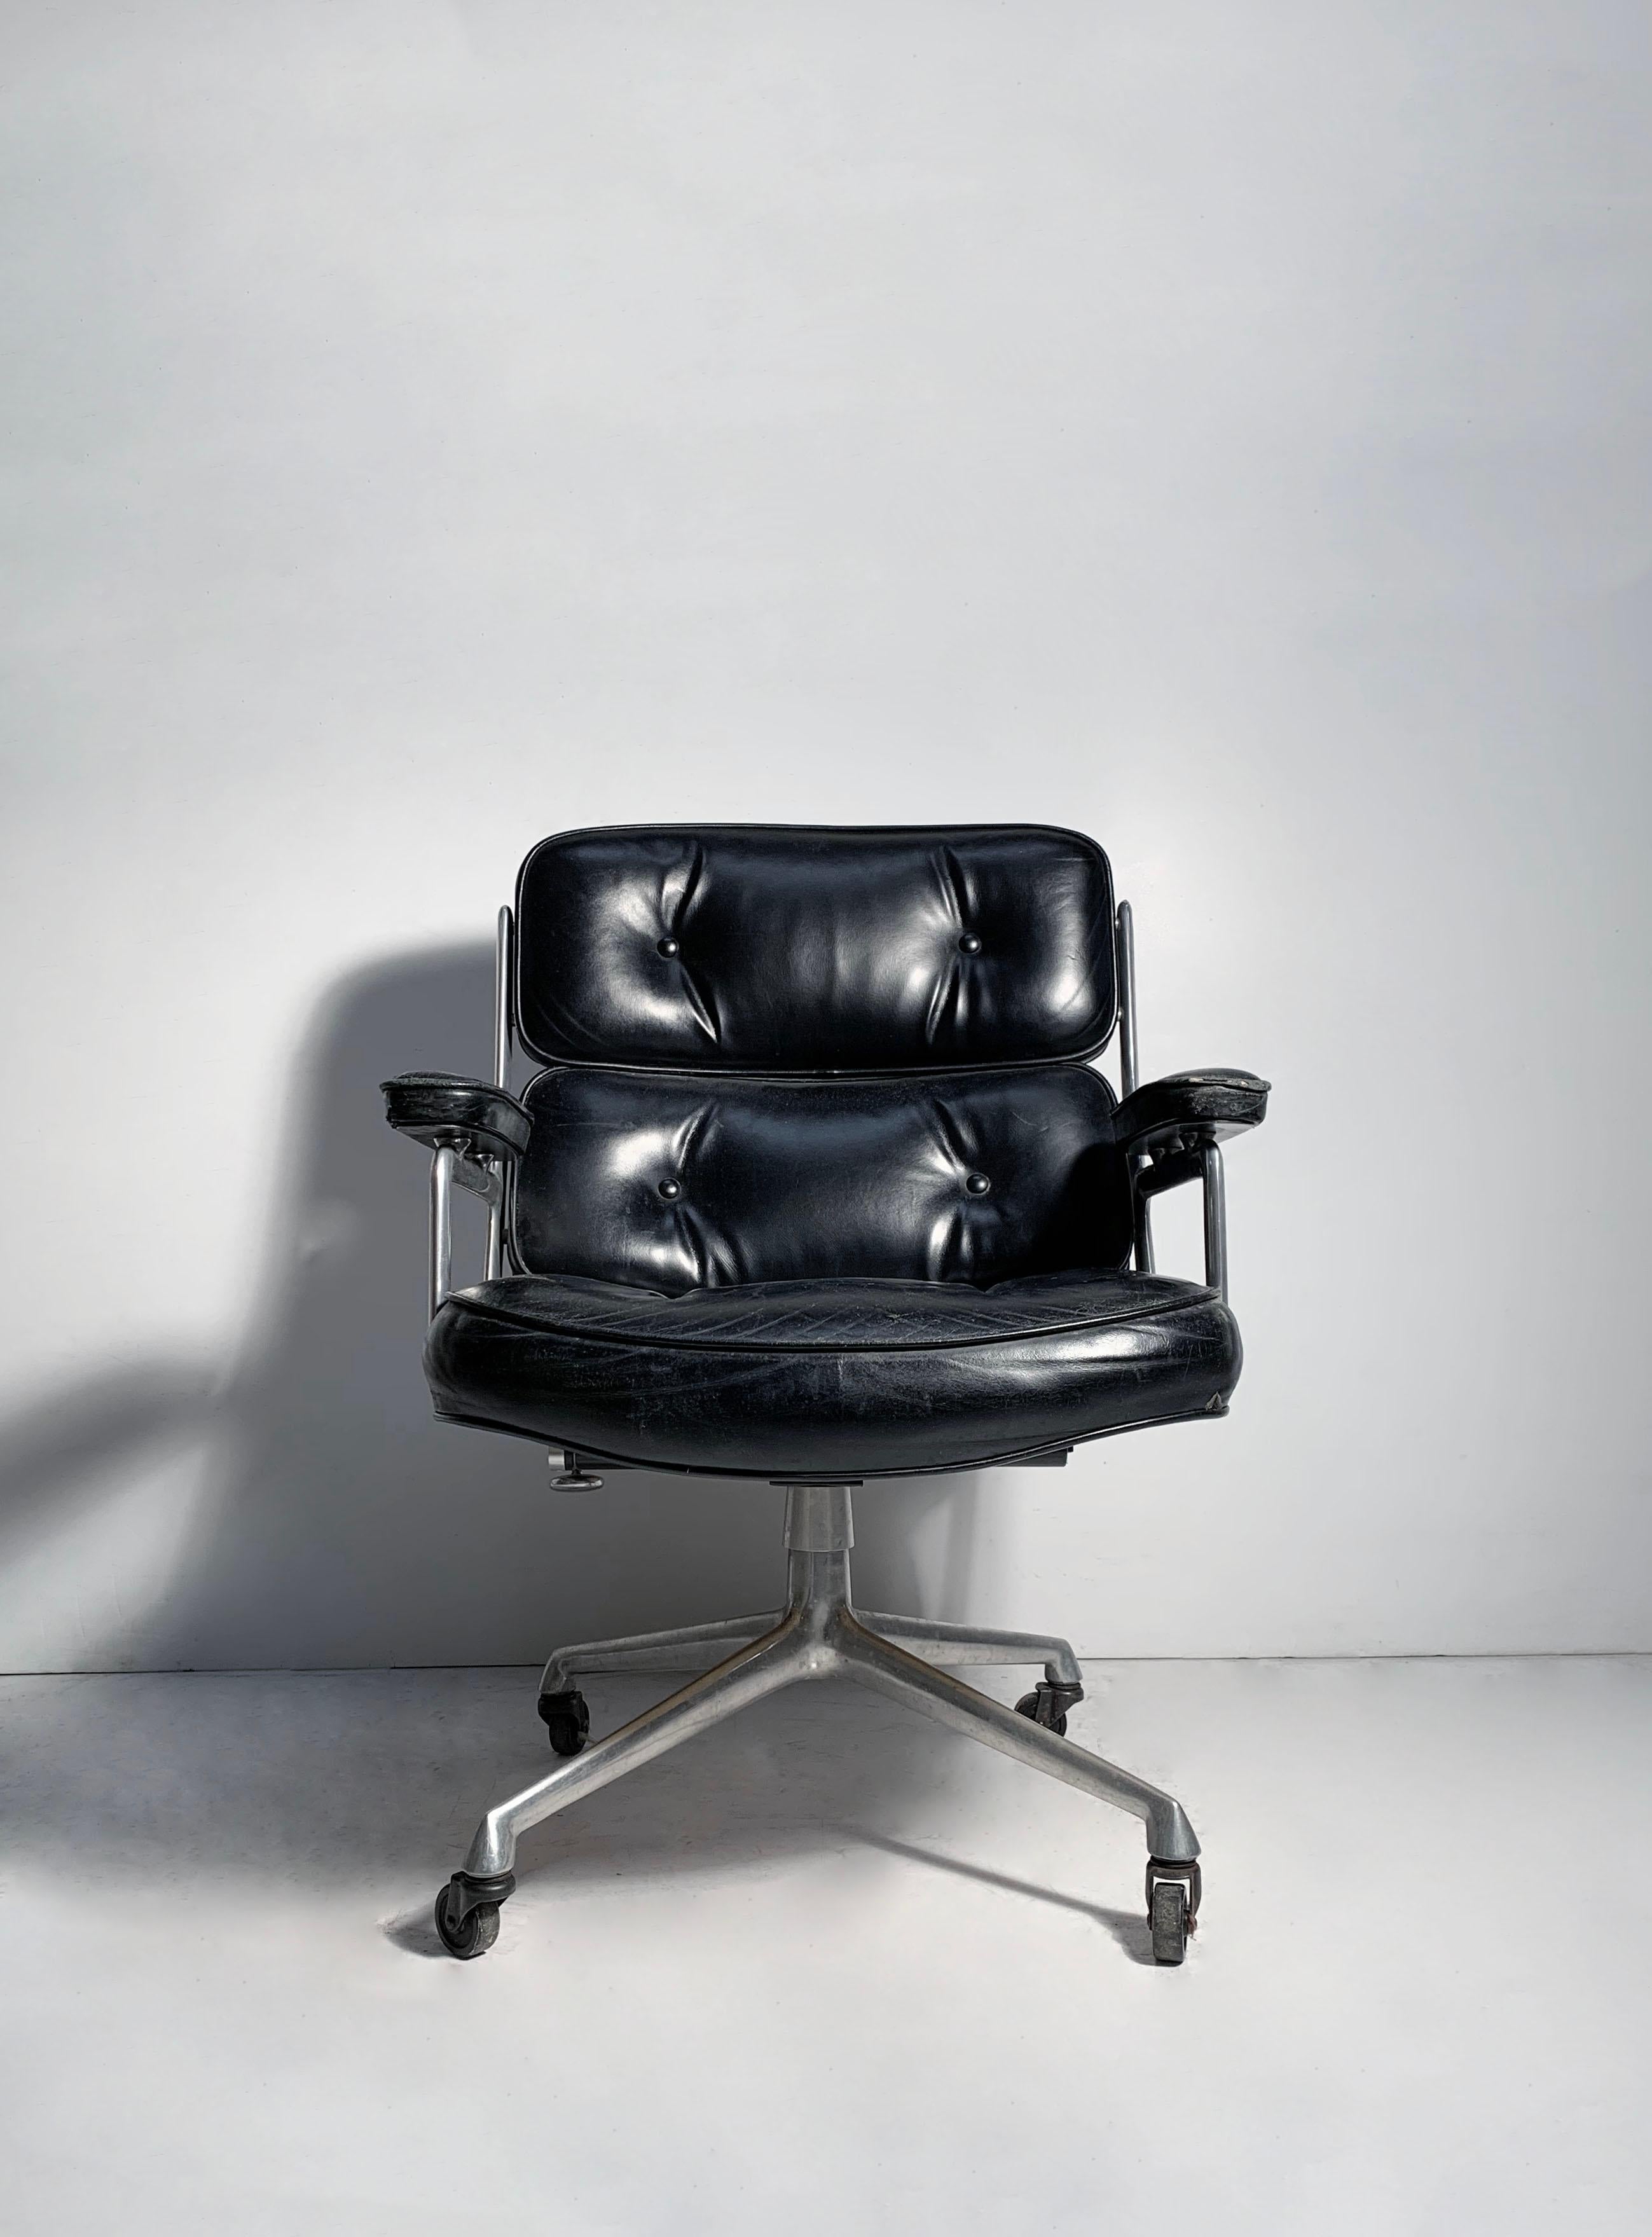 Chaise de bureau vintage Time Life ES104 par Charles Eames pour Herman Miller. Il semble qu'il s'agisse d'un bel exemple précoce de ce modèle.
Je vérifierai les dimensions de la chaise.

Usure du cuir d'origine comme indiqué. Il faut soit restaurer